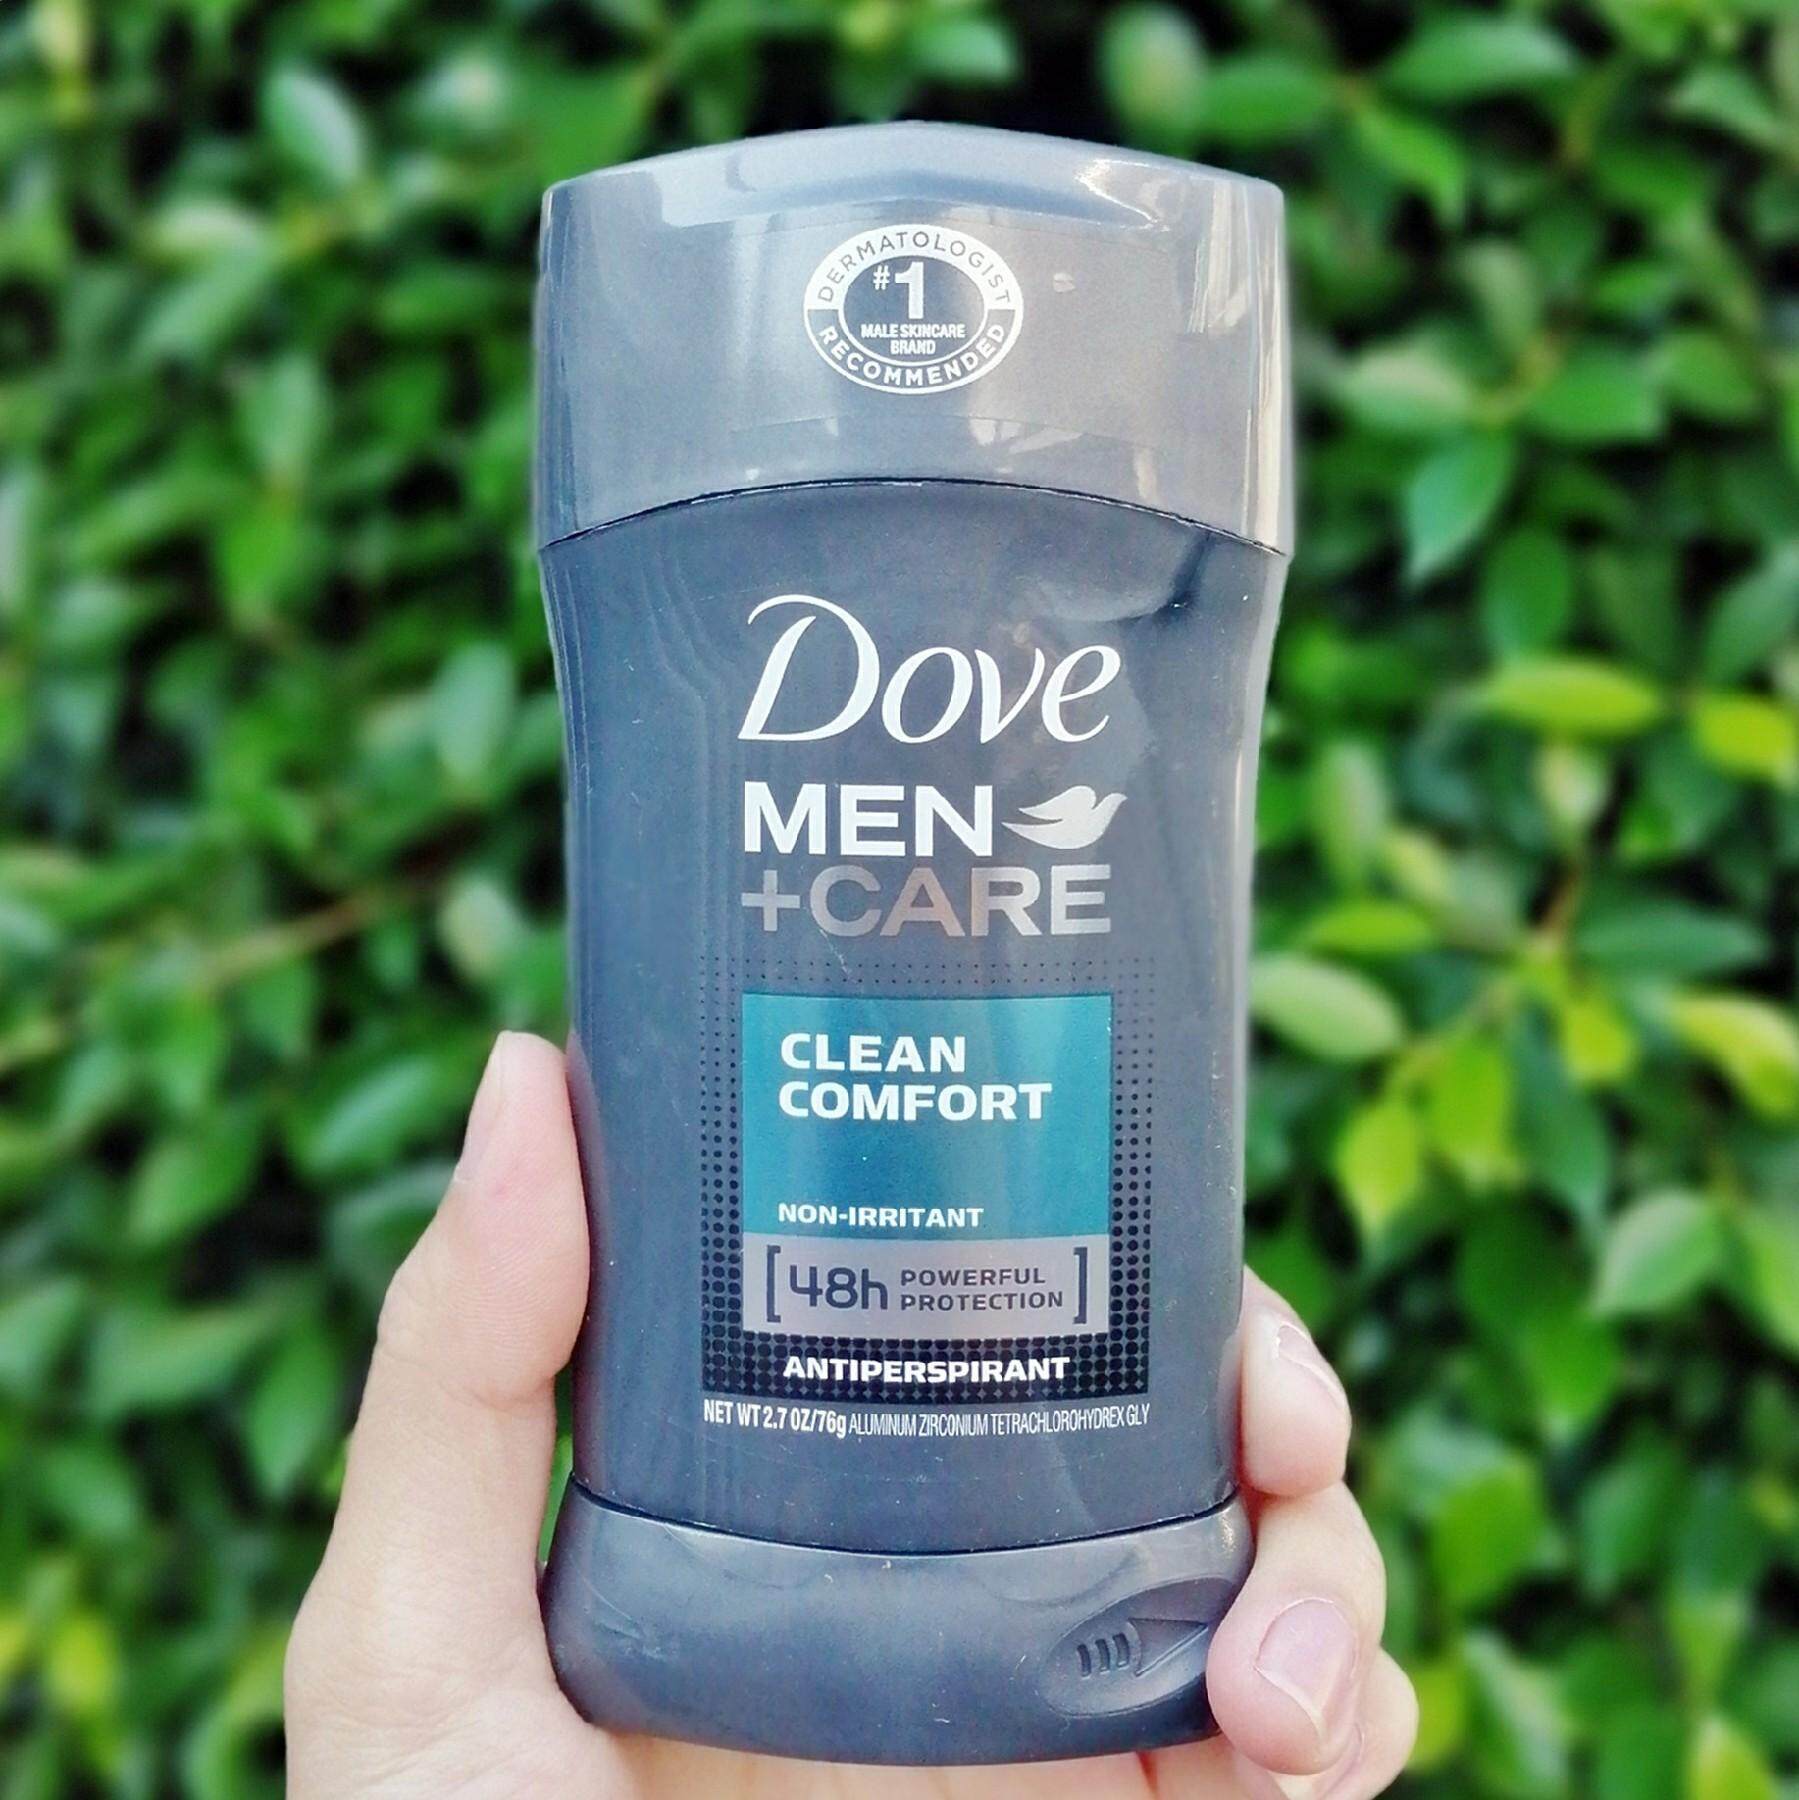 ซื้อที่ไหน โรลออนผู้ชาย Dove® Men+Care® Clean Comfort Antiperspirant Stick 76g ผลิตภัณฑ์ระงับกลิ่นกาย สูตรคลีนคอมฟอร์ท Non Irritant, 48h Powerful Protection โดฟ เมน แคร์